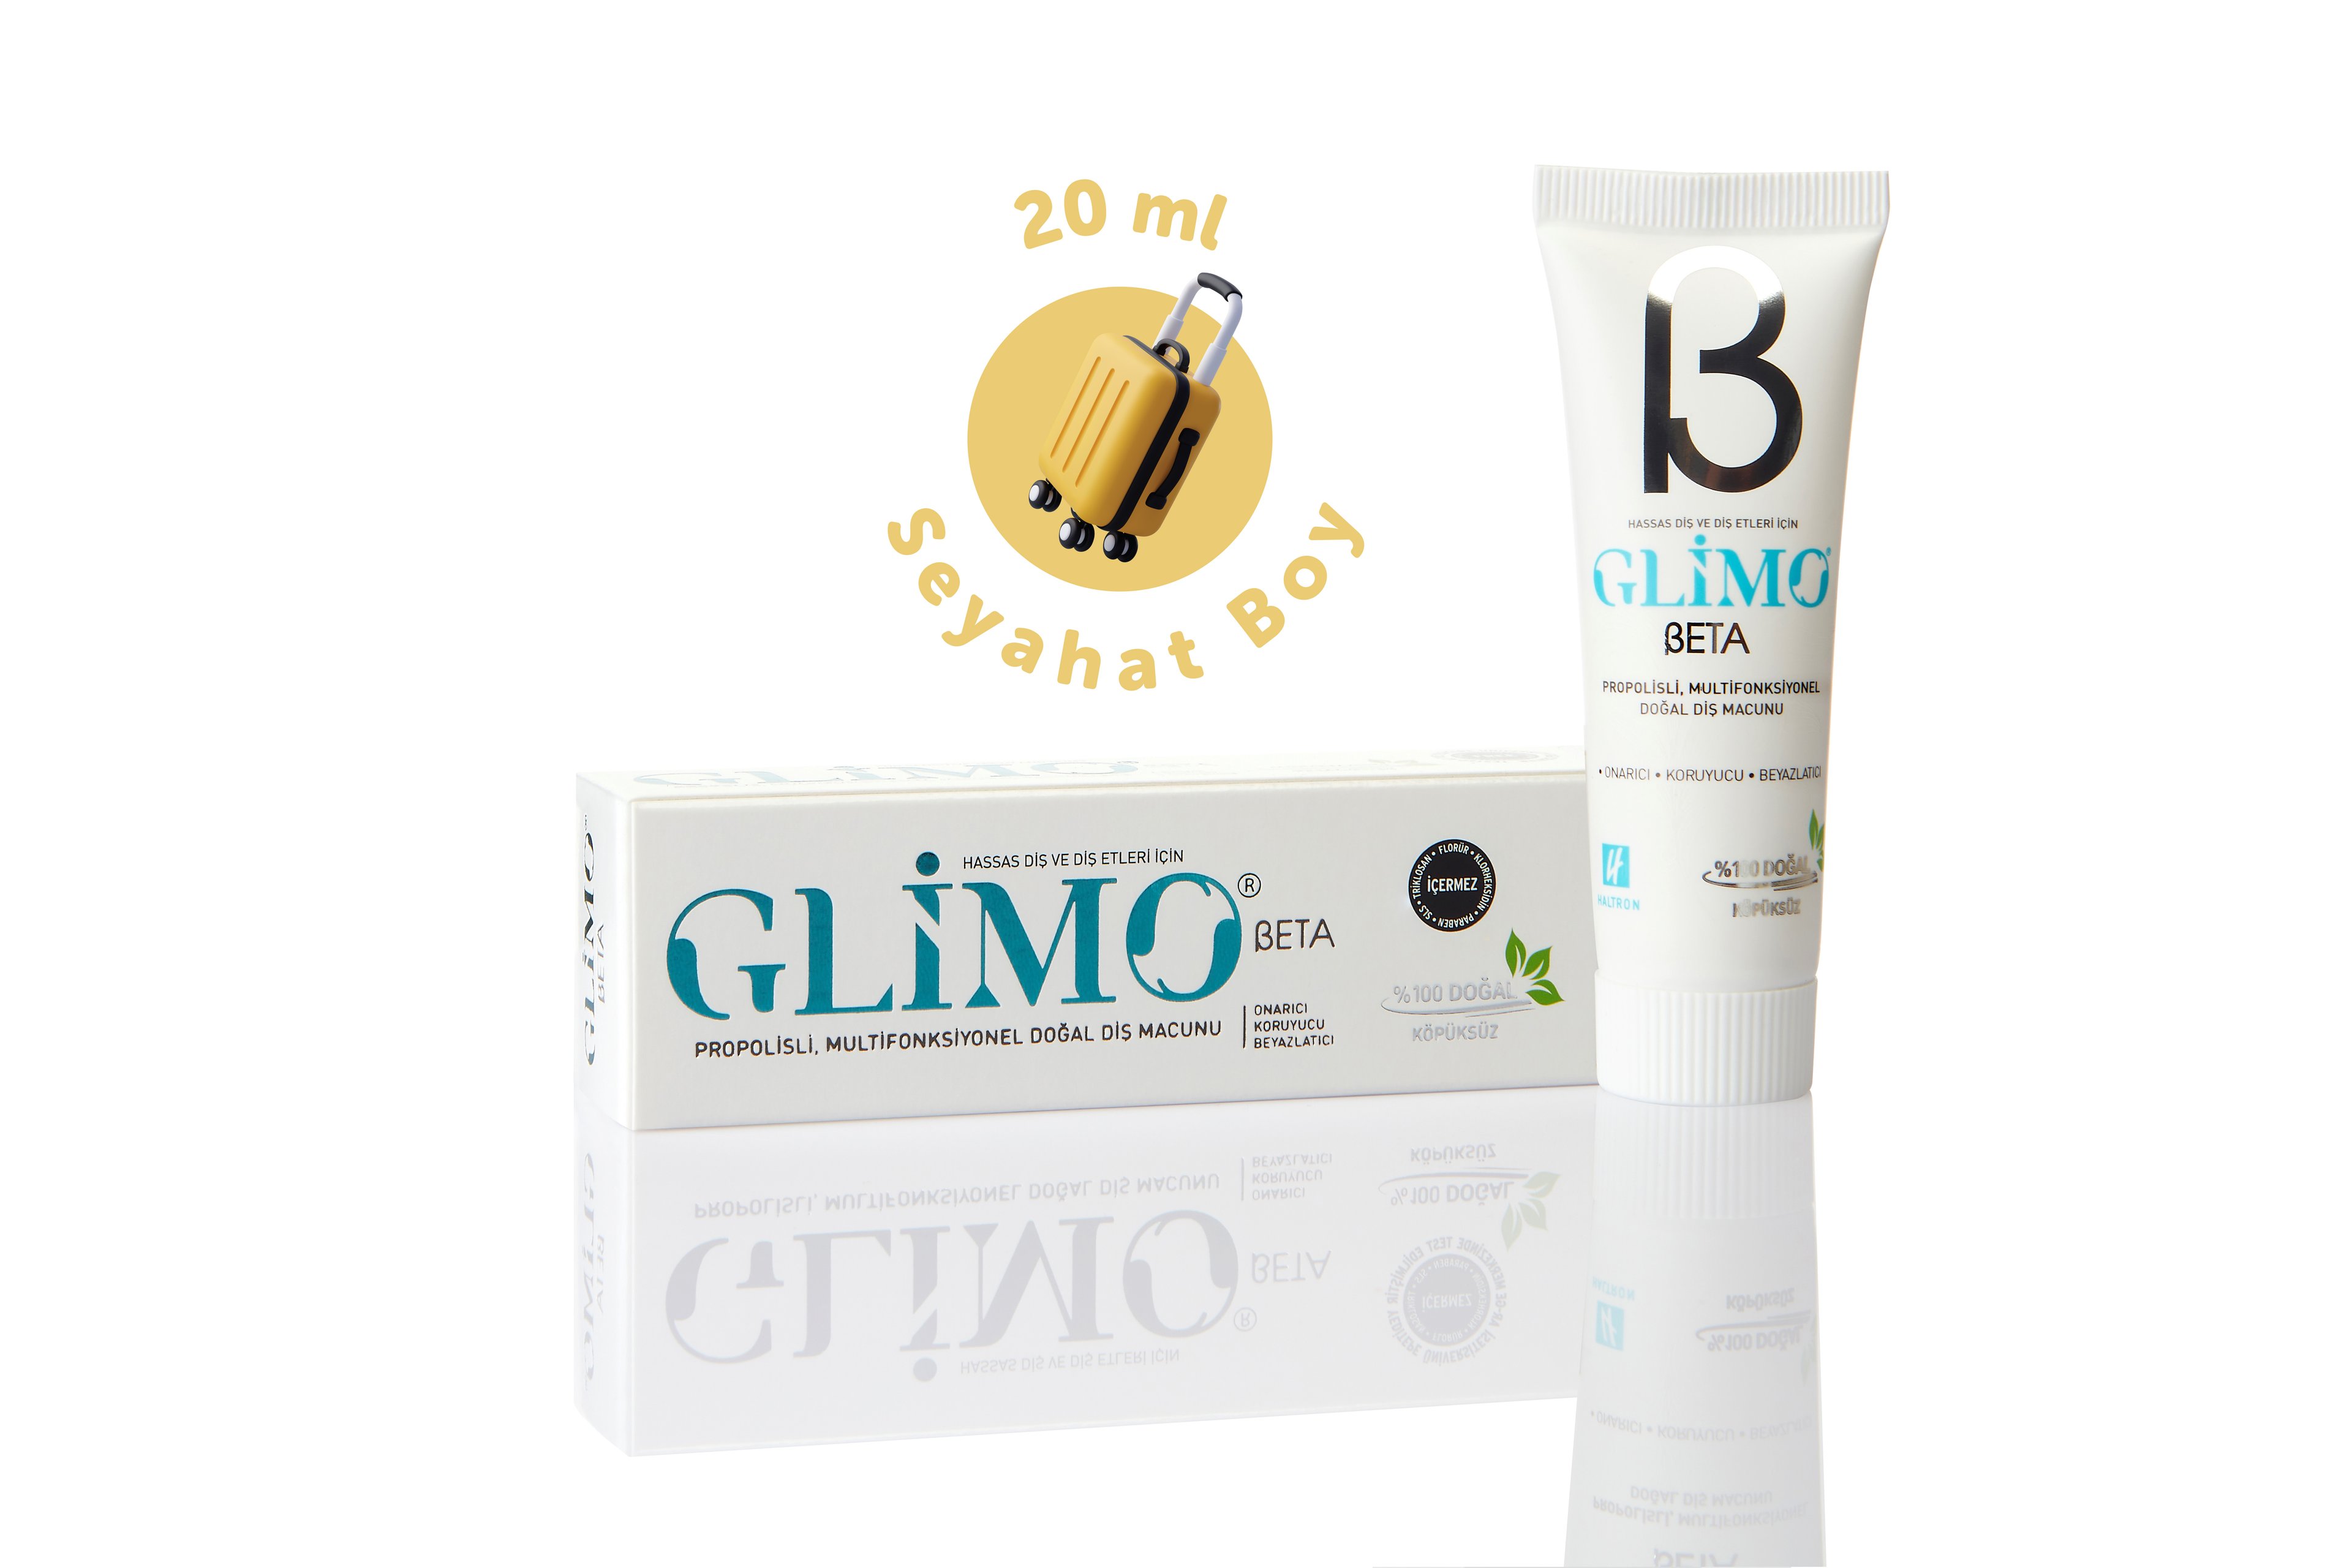 Glimo Beta Hassas Diş Etleri İçin Propolisli %100 Doğal Diş Macunu - 20ml